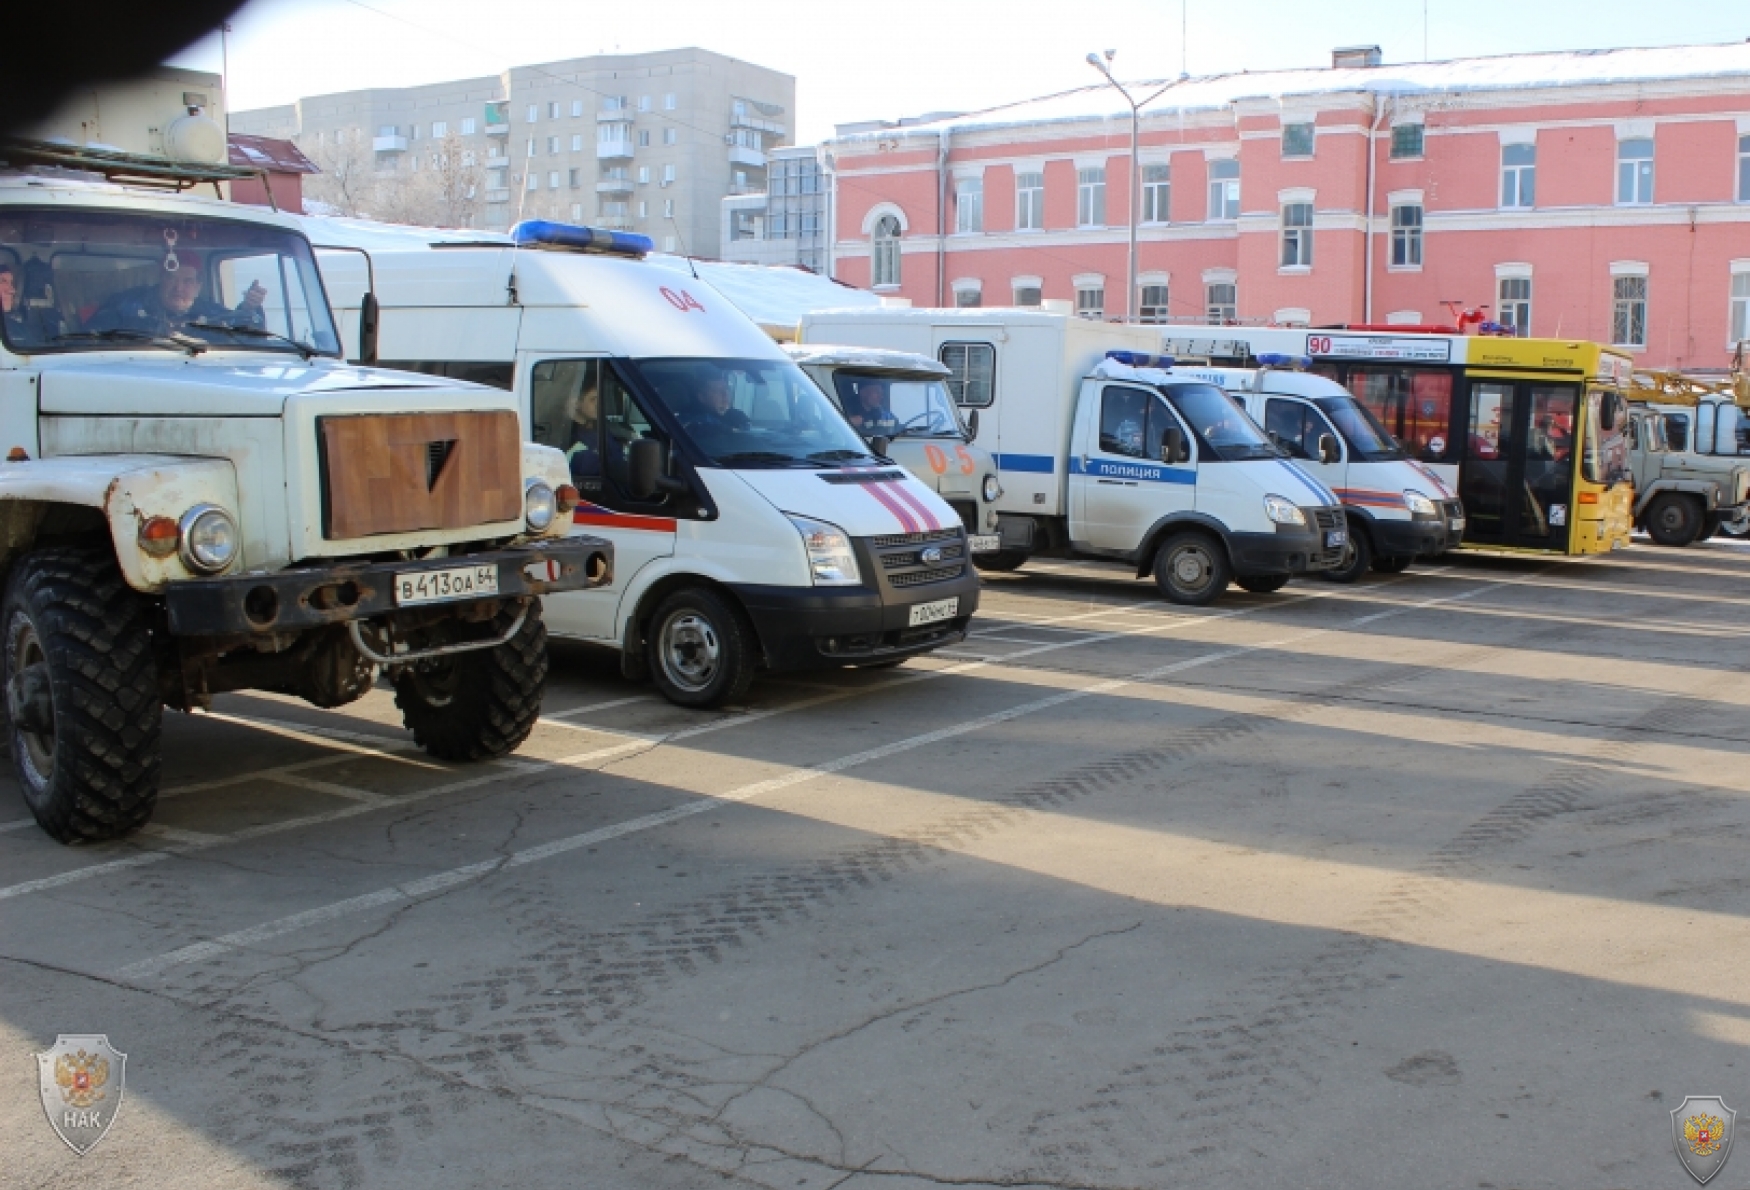 Оперативным штабом в Саратовской области проведены антитеррористические командно-штабные учения  на стадионе «Локомотив»